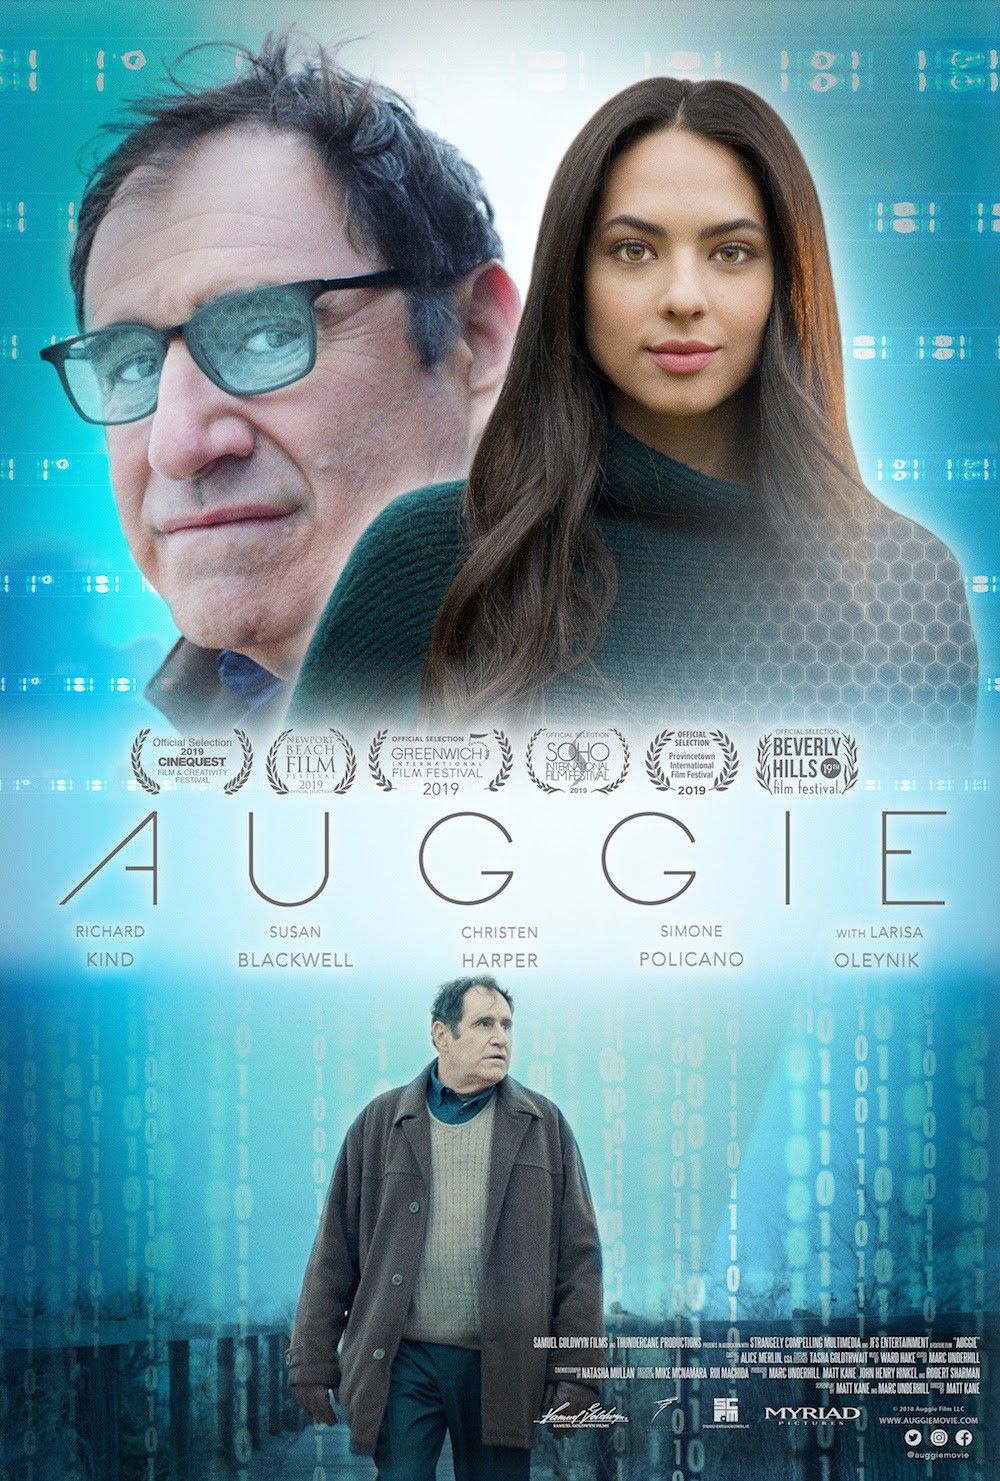 Poster of Samuel Goldwyn Films' Auggie (2019)